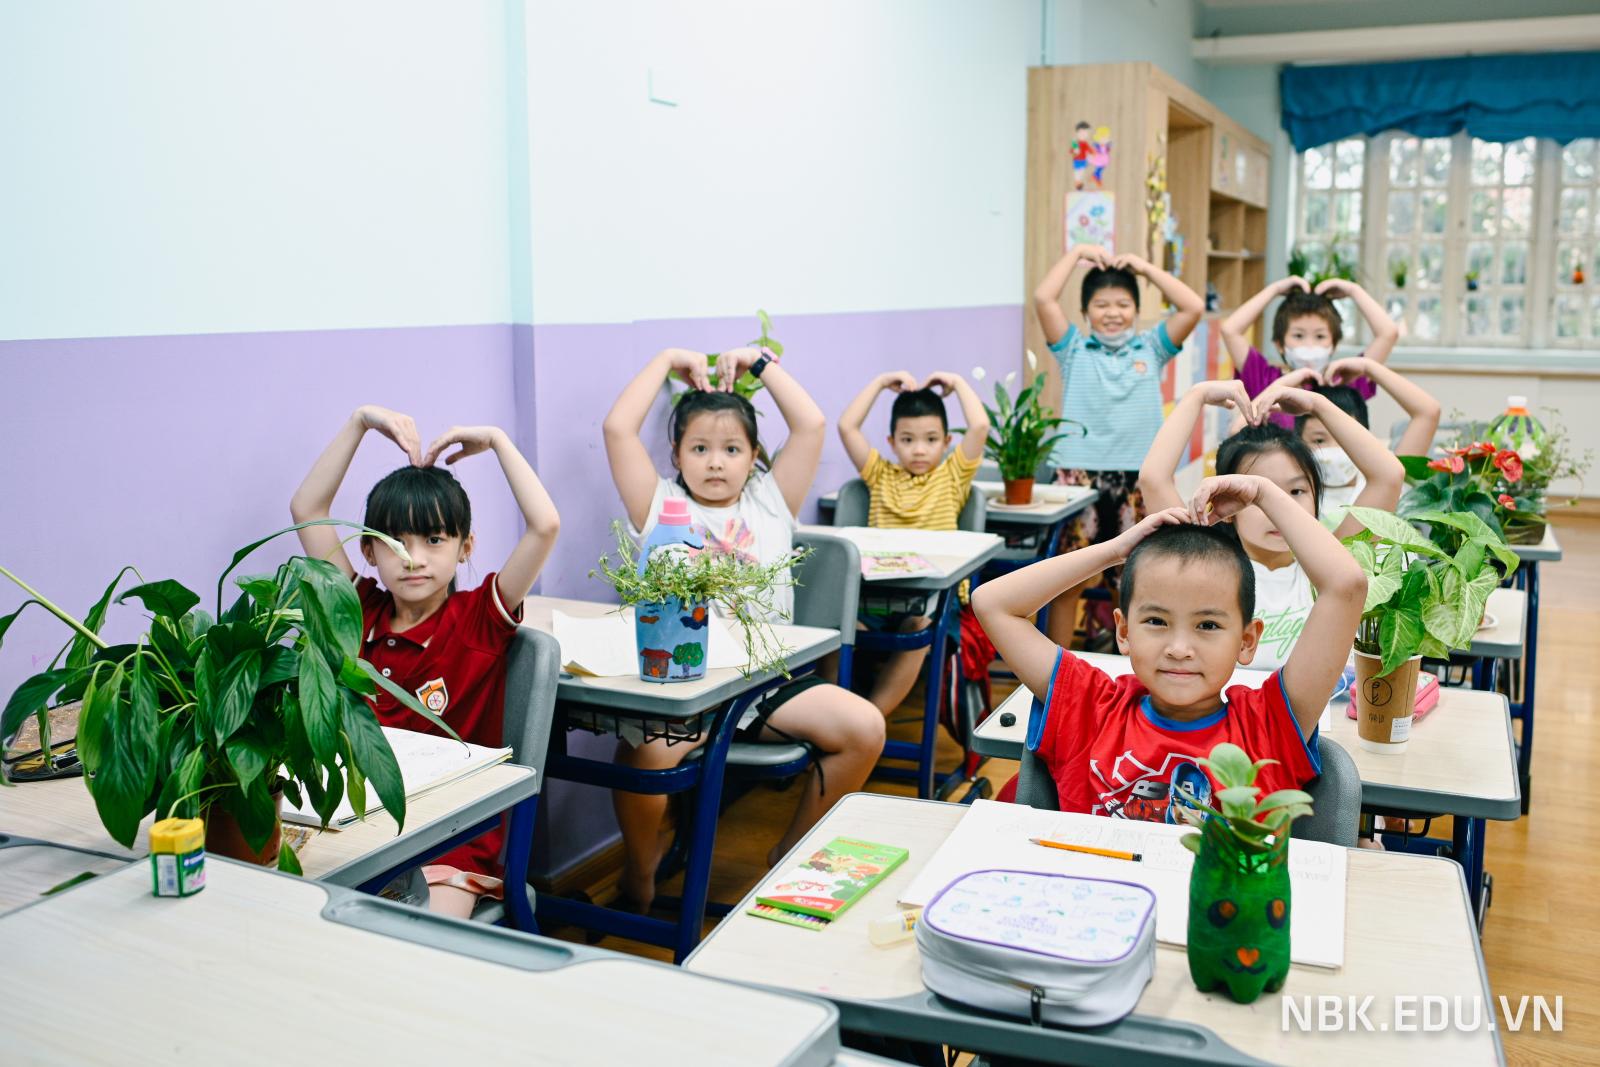 Trang trí lớp học theo mô hình VNEN tại các lớp học  Tiểu học Lê Quý Đôn